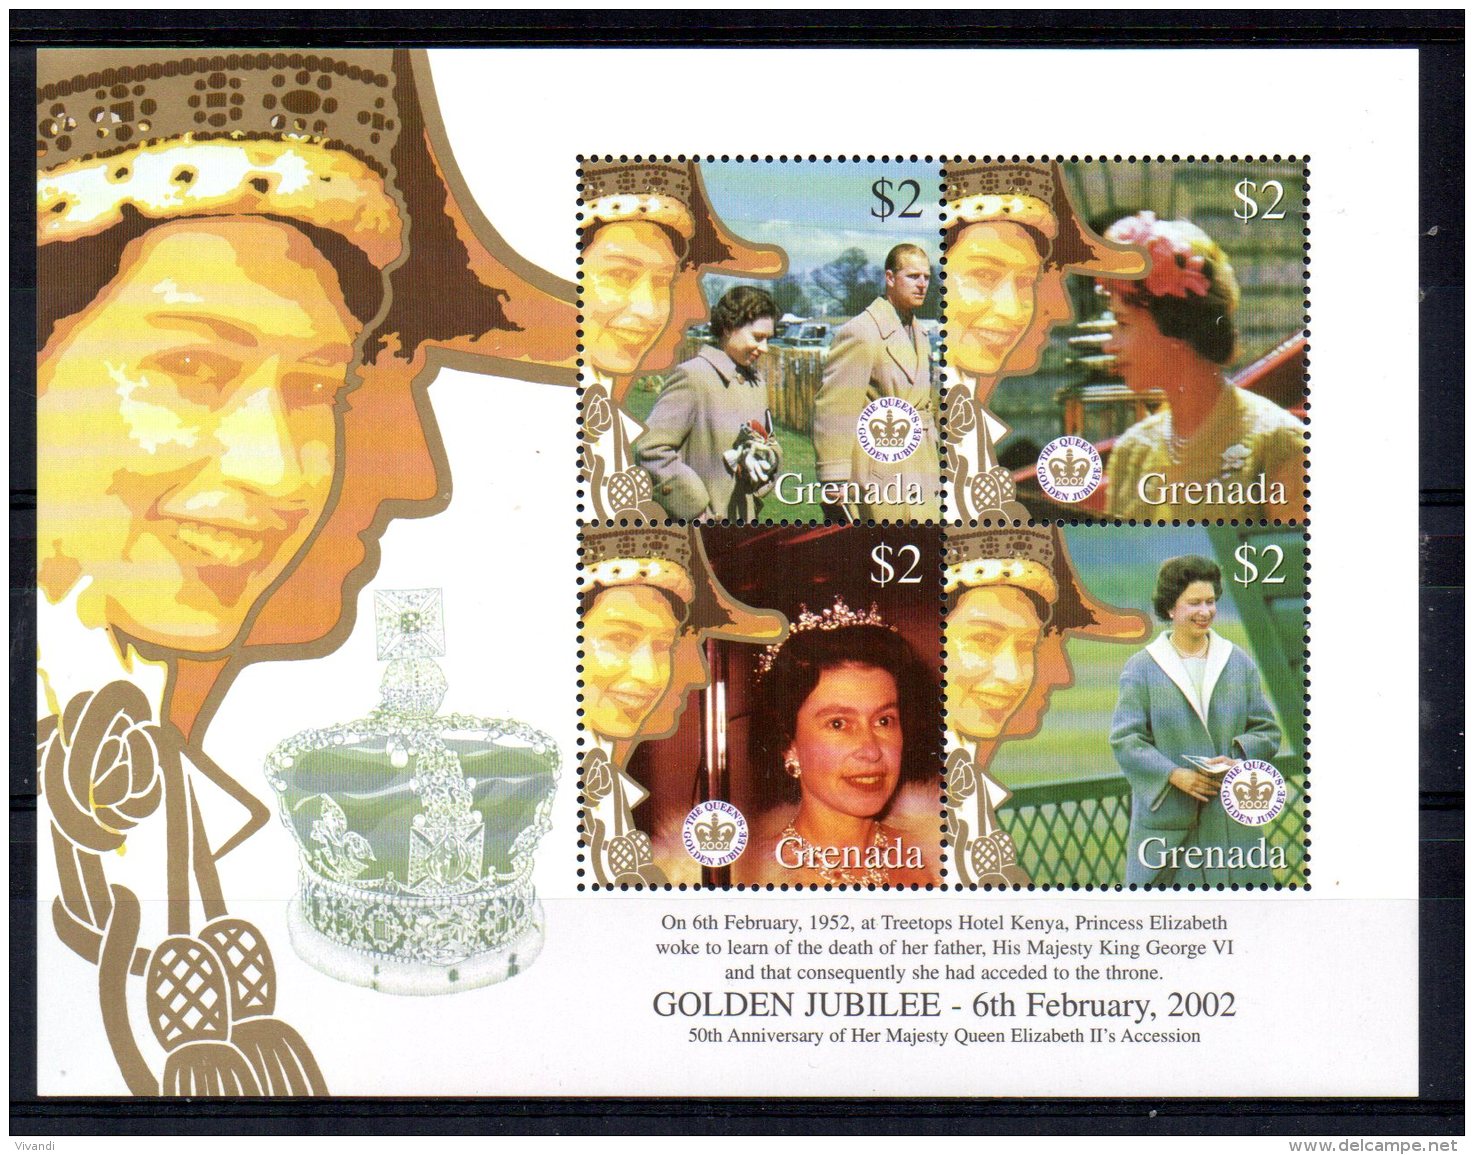 Grenada - 2002 - Queen Elizabeth II's Golden Jubilee - MNH - Grenade (1974-...)